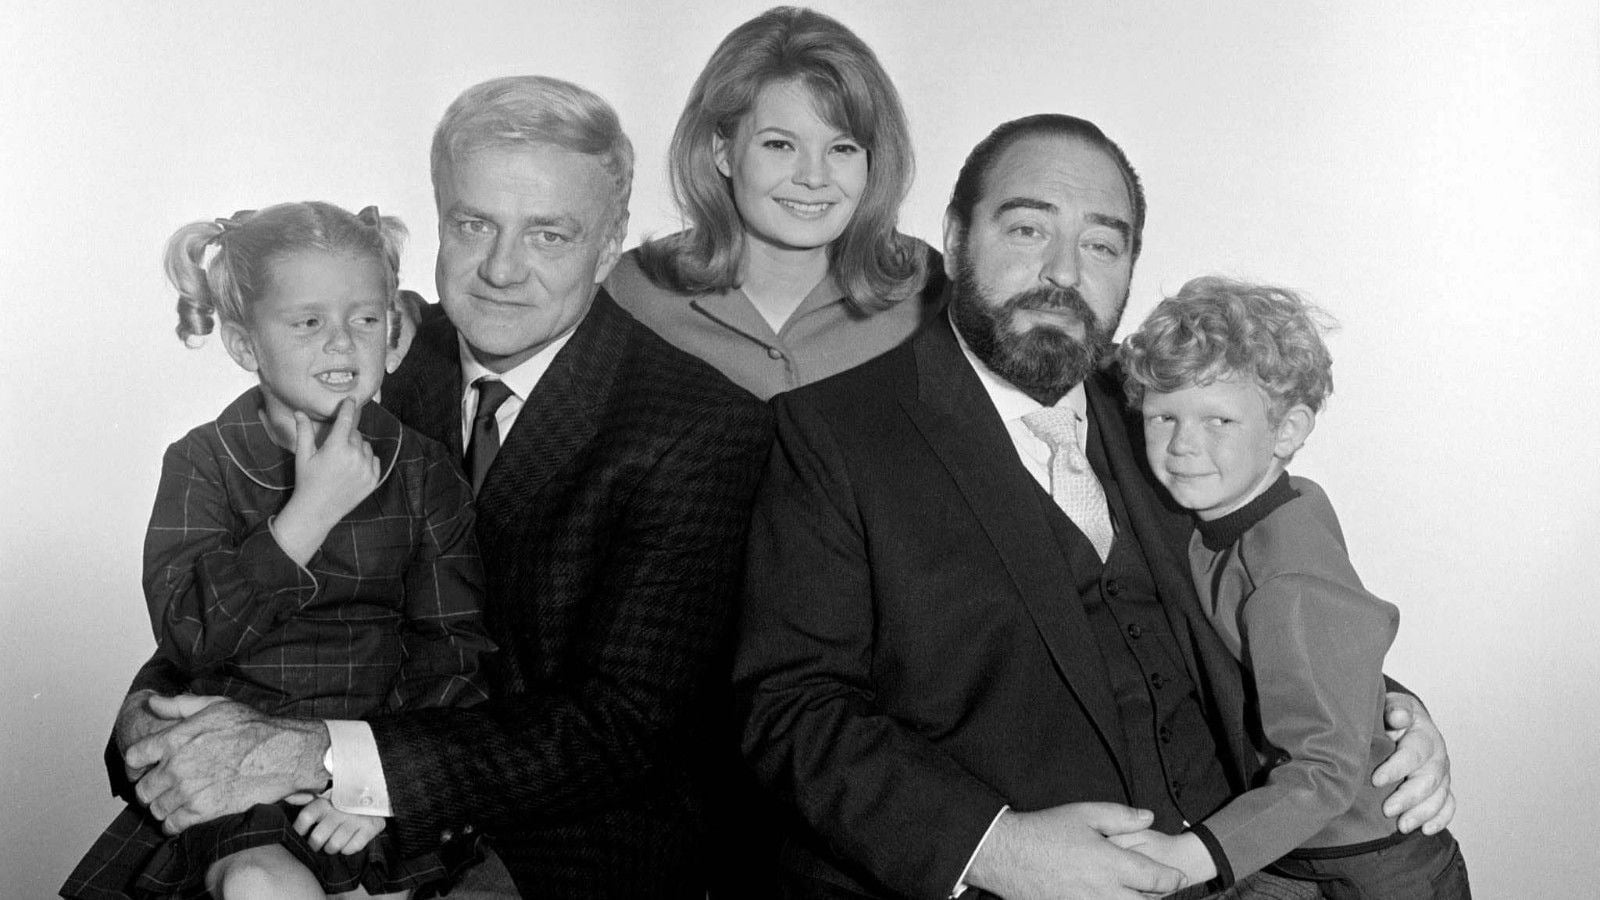 Family Affair (1966)